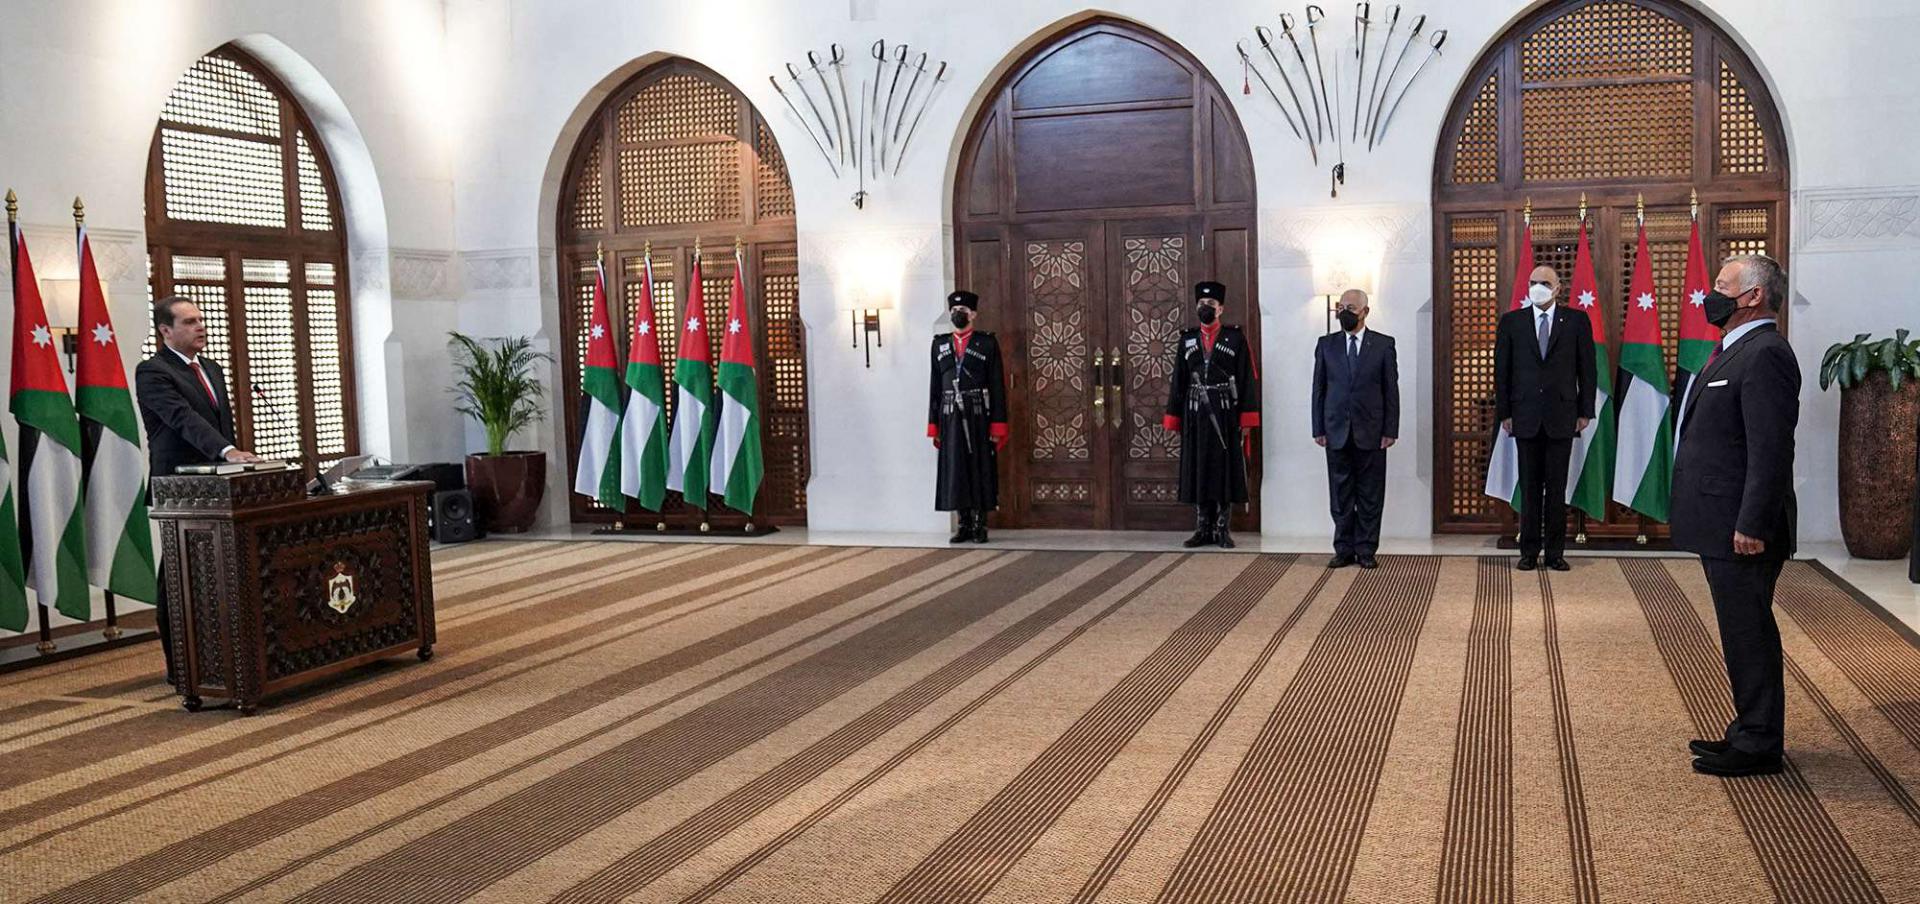 الهواري يؤدي اليمين الدستورية أمام الملك عبدالله